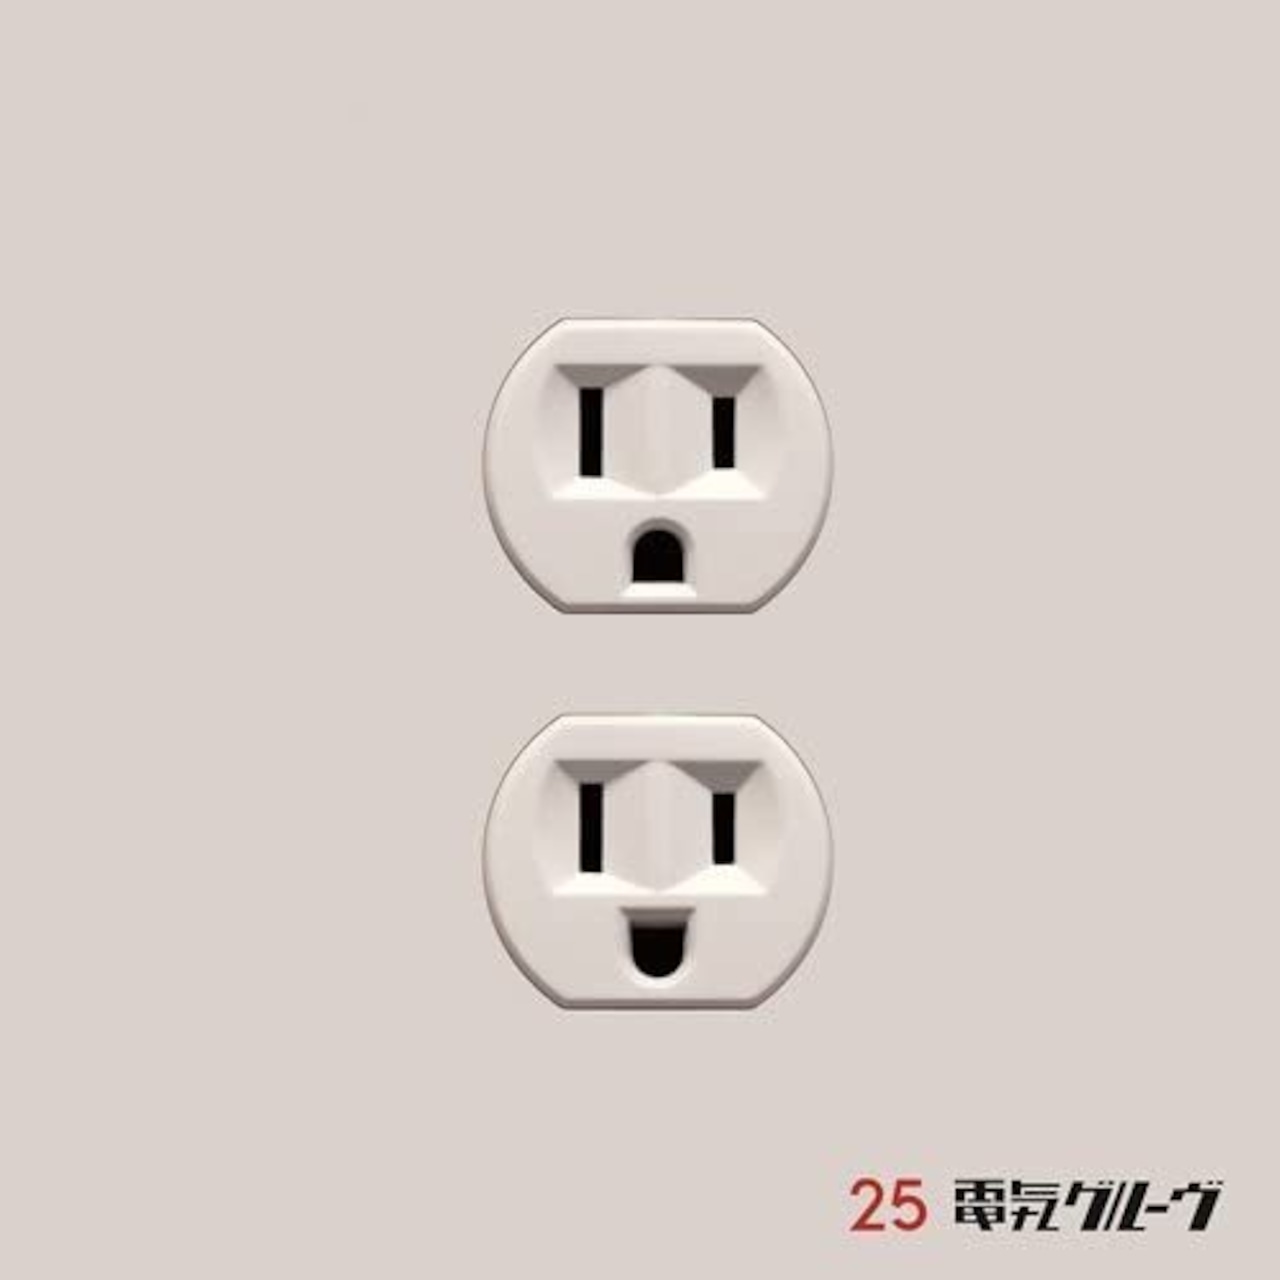 電気グルーブ「25」1ＣＤ+7インチアナログ盤【完全生産限定盤】